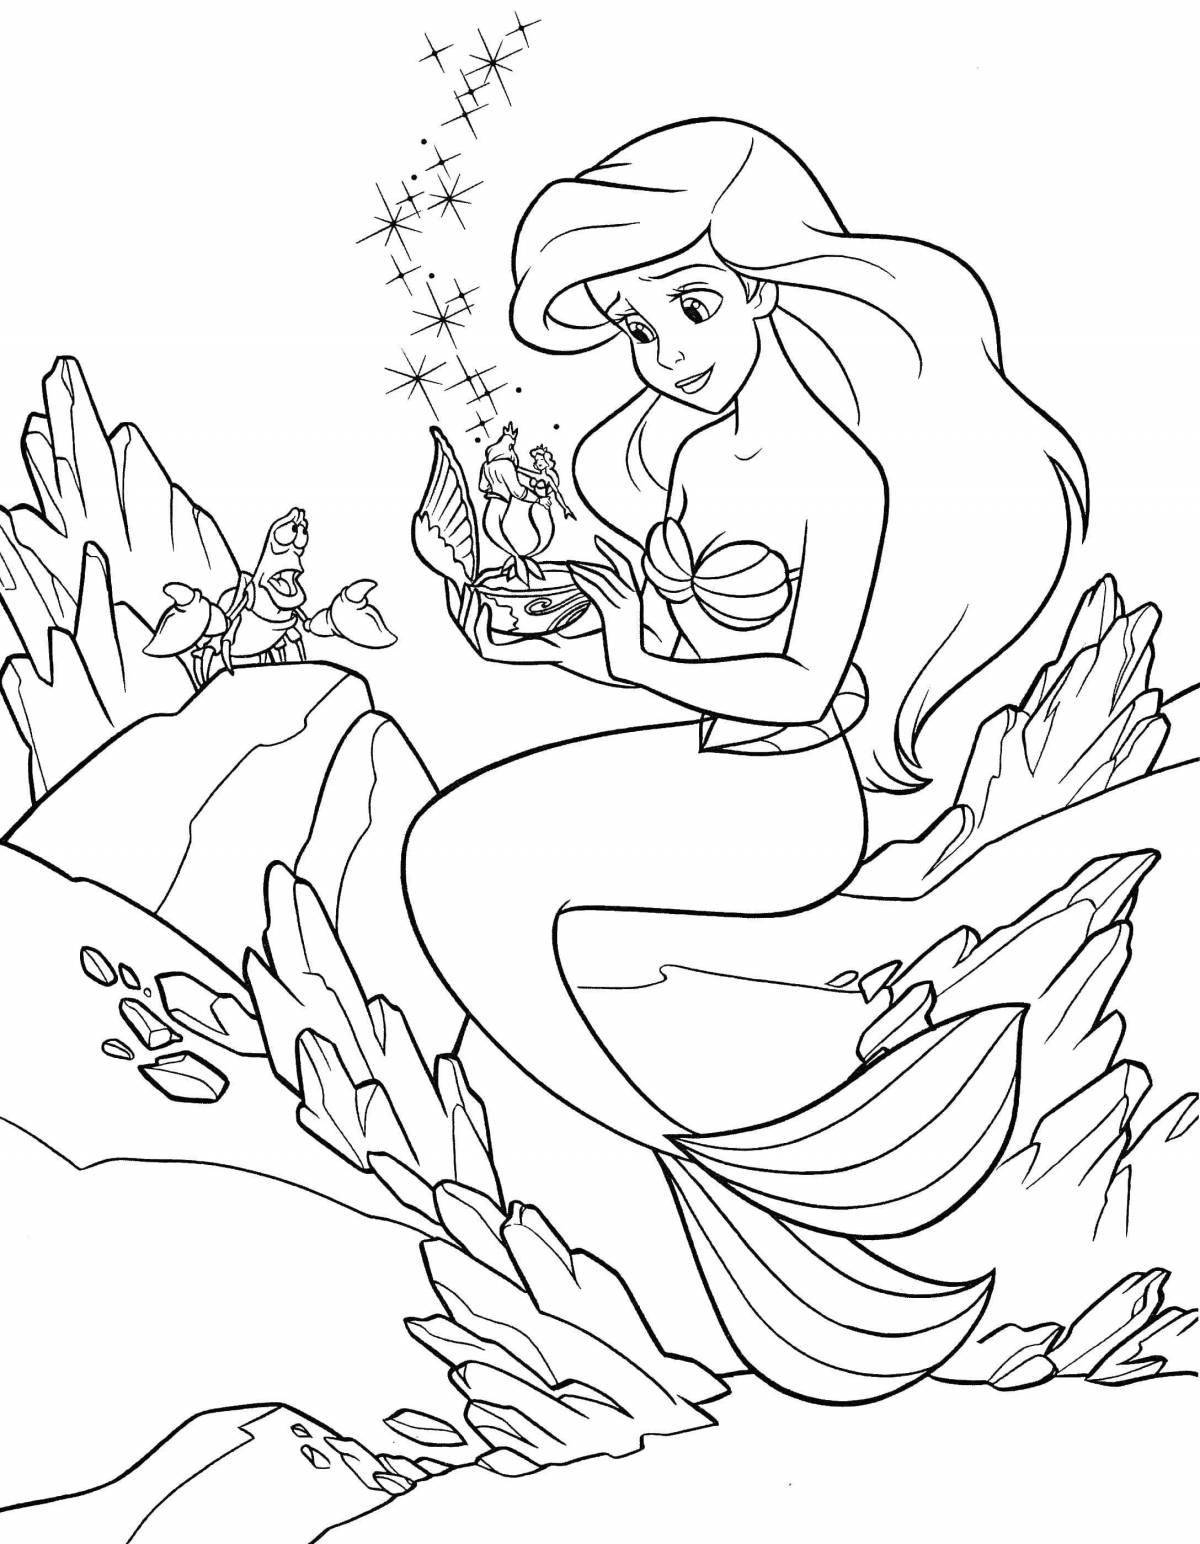 Major mermaid princess coloring book